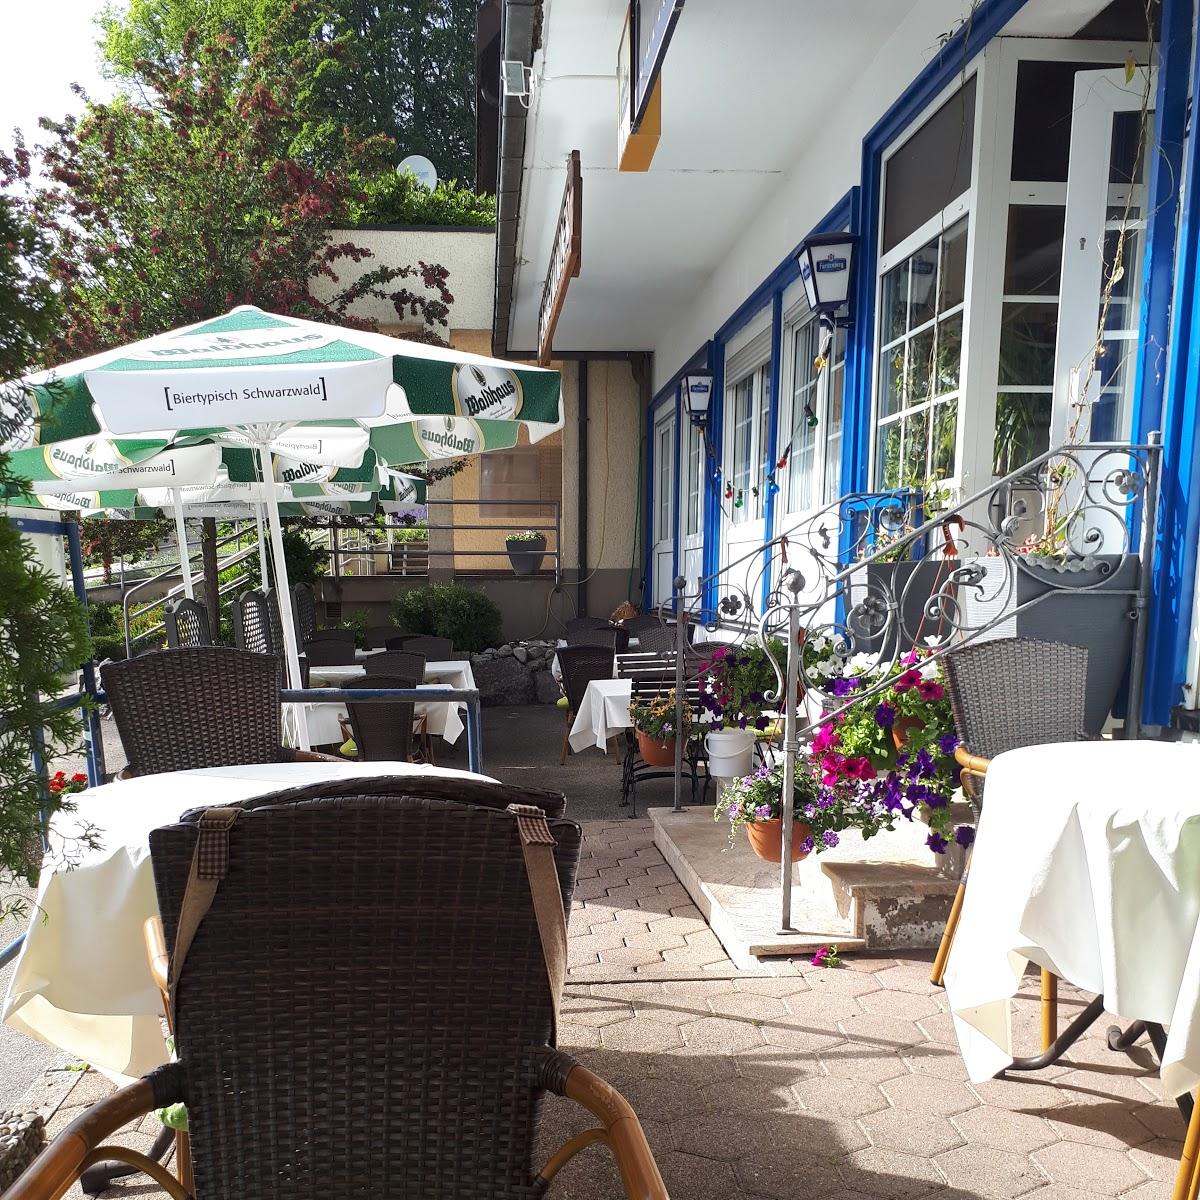 Restaurant "Onkel Ali" in Herrischried